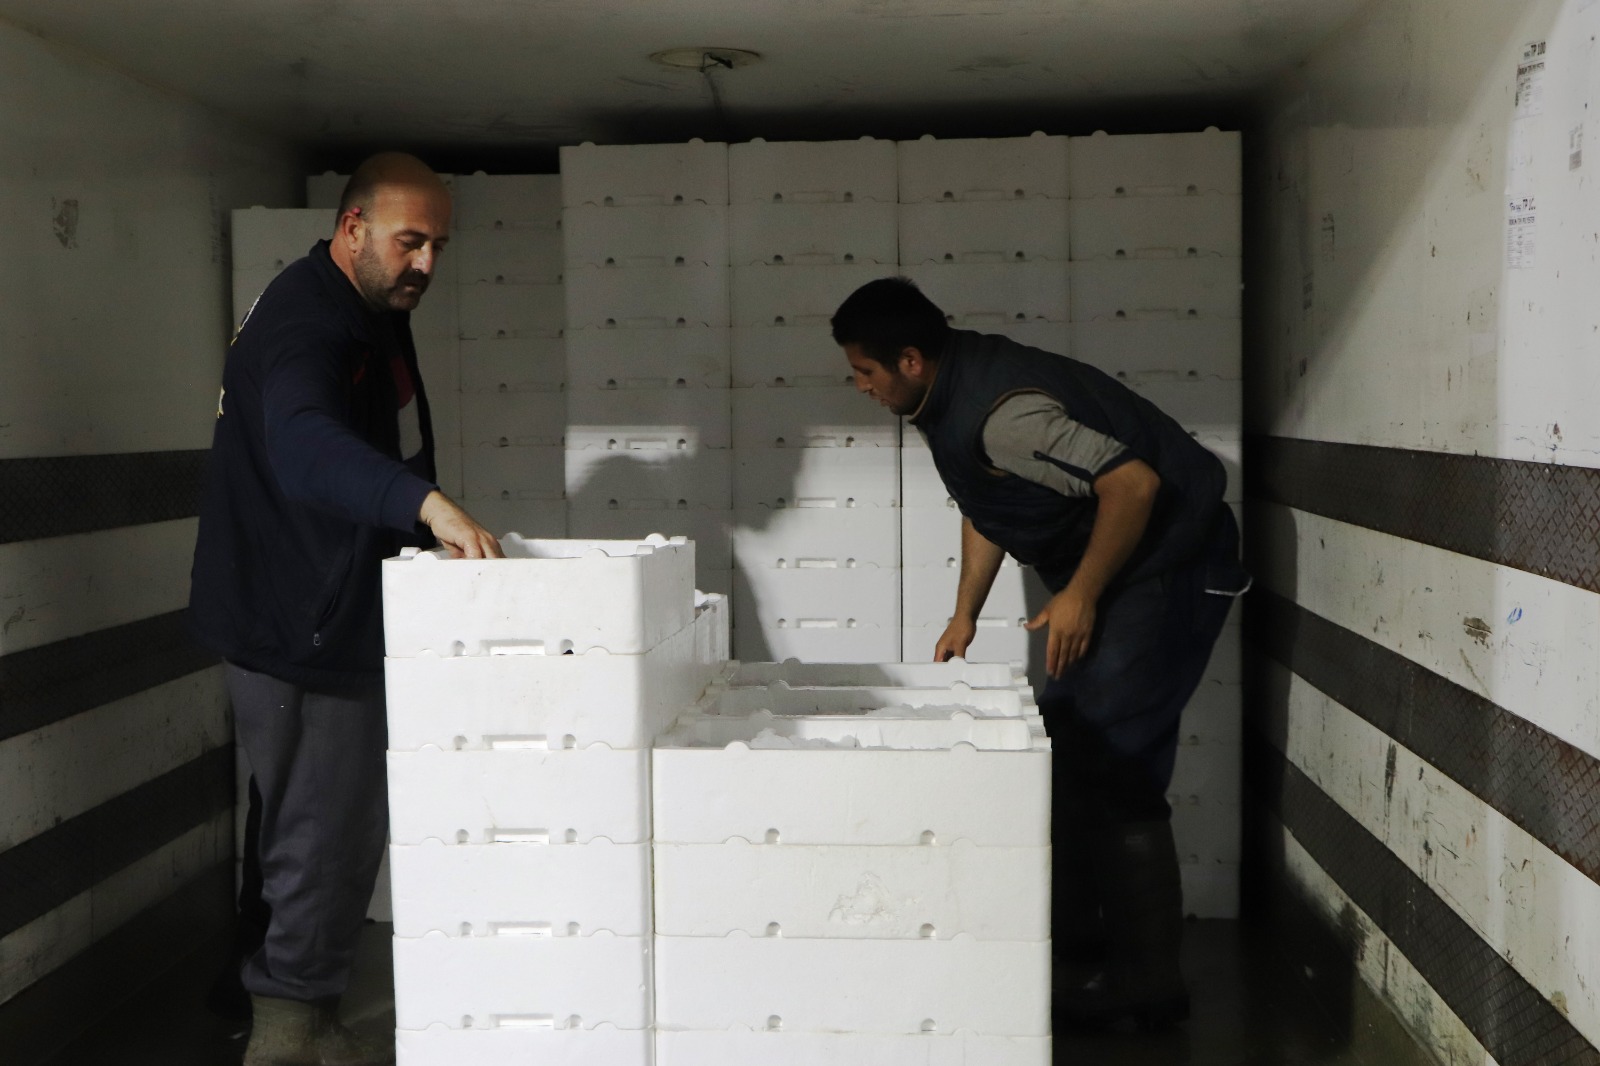  Samsun'da balık halinde gece 03.00'te yapılan mezatta kasalar dolusu palamut kapış kapış satıldı